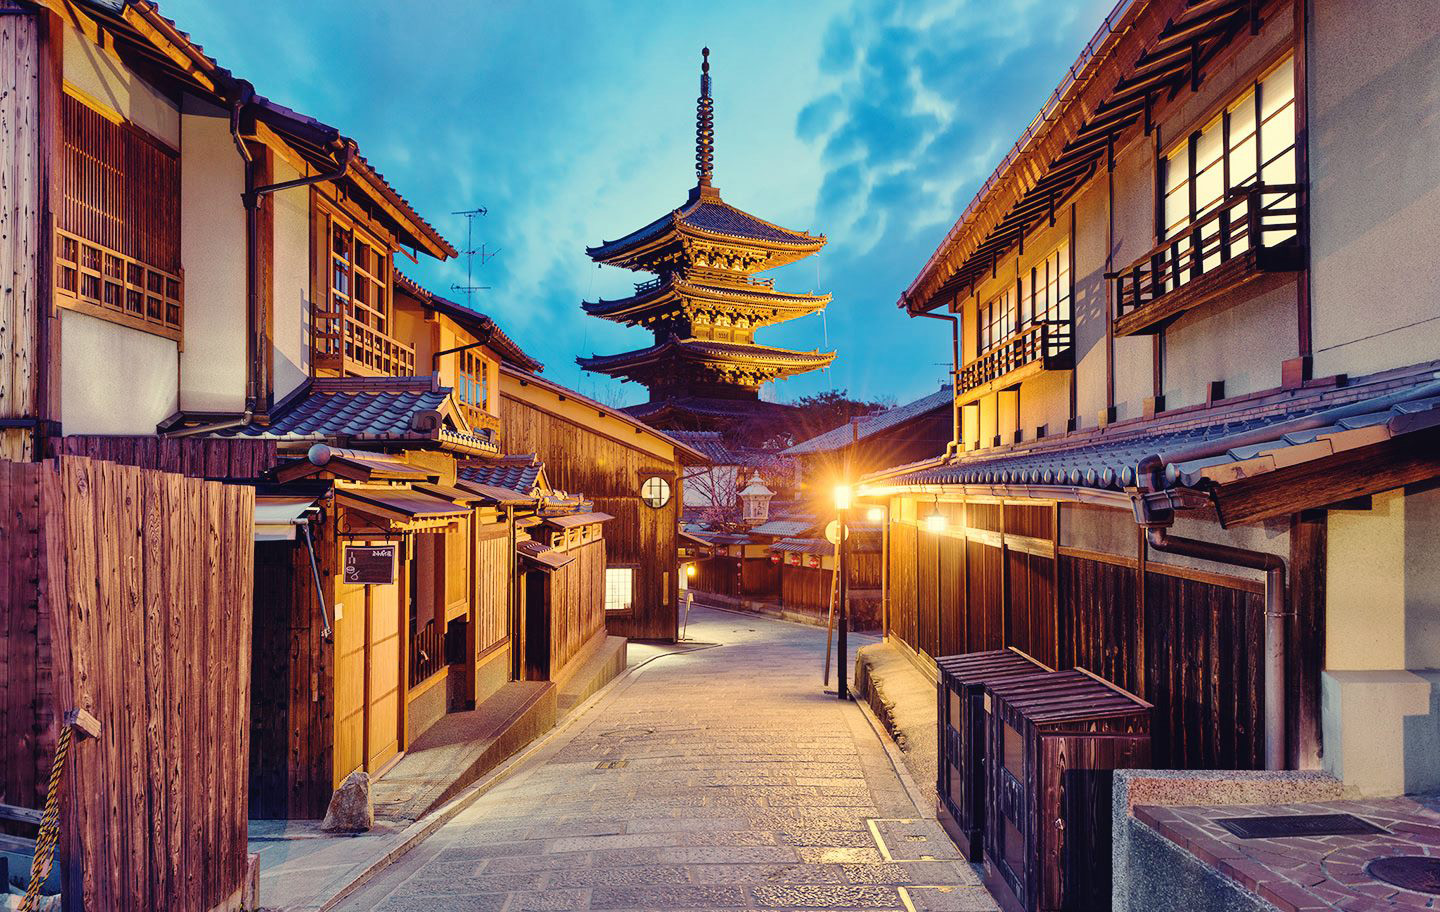 Khu phố Gion nằm tại trung tâm của cố đô, tại đây du khách có thể tìm thấy tất cả những nét truyền thống của đế chế Nhật Bản xa xưa như: thưởng thức trà đạo trong những ngôi nhà gỗ truyền thống, hình ảnh những cây hoa anh đào xanh tươi bên đường phố và tất nhiên là cả nghệ thuật Geisha truyền thống.